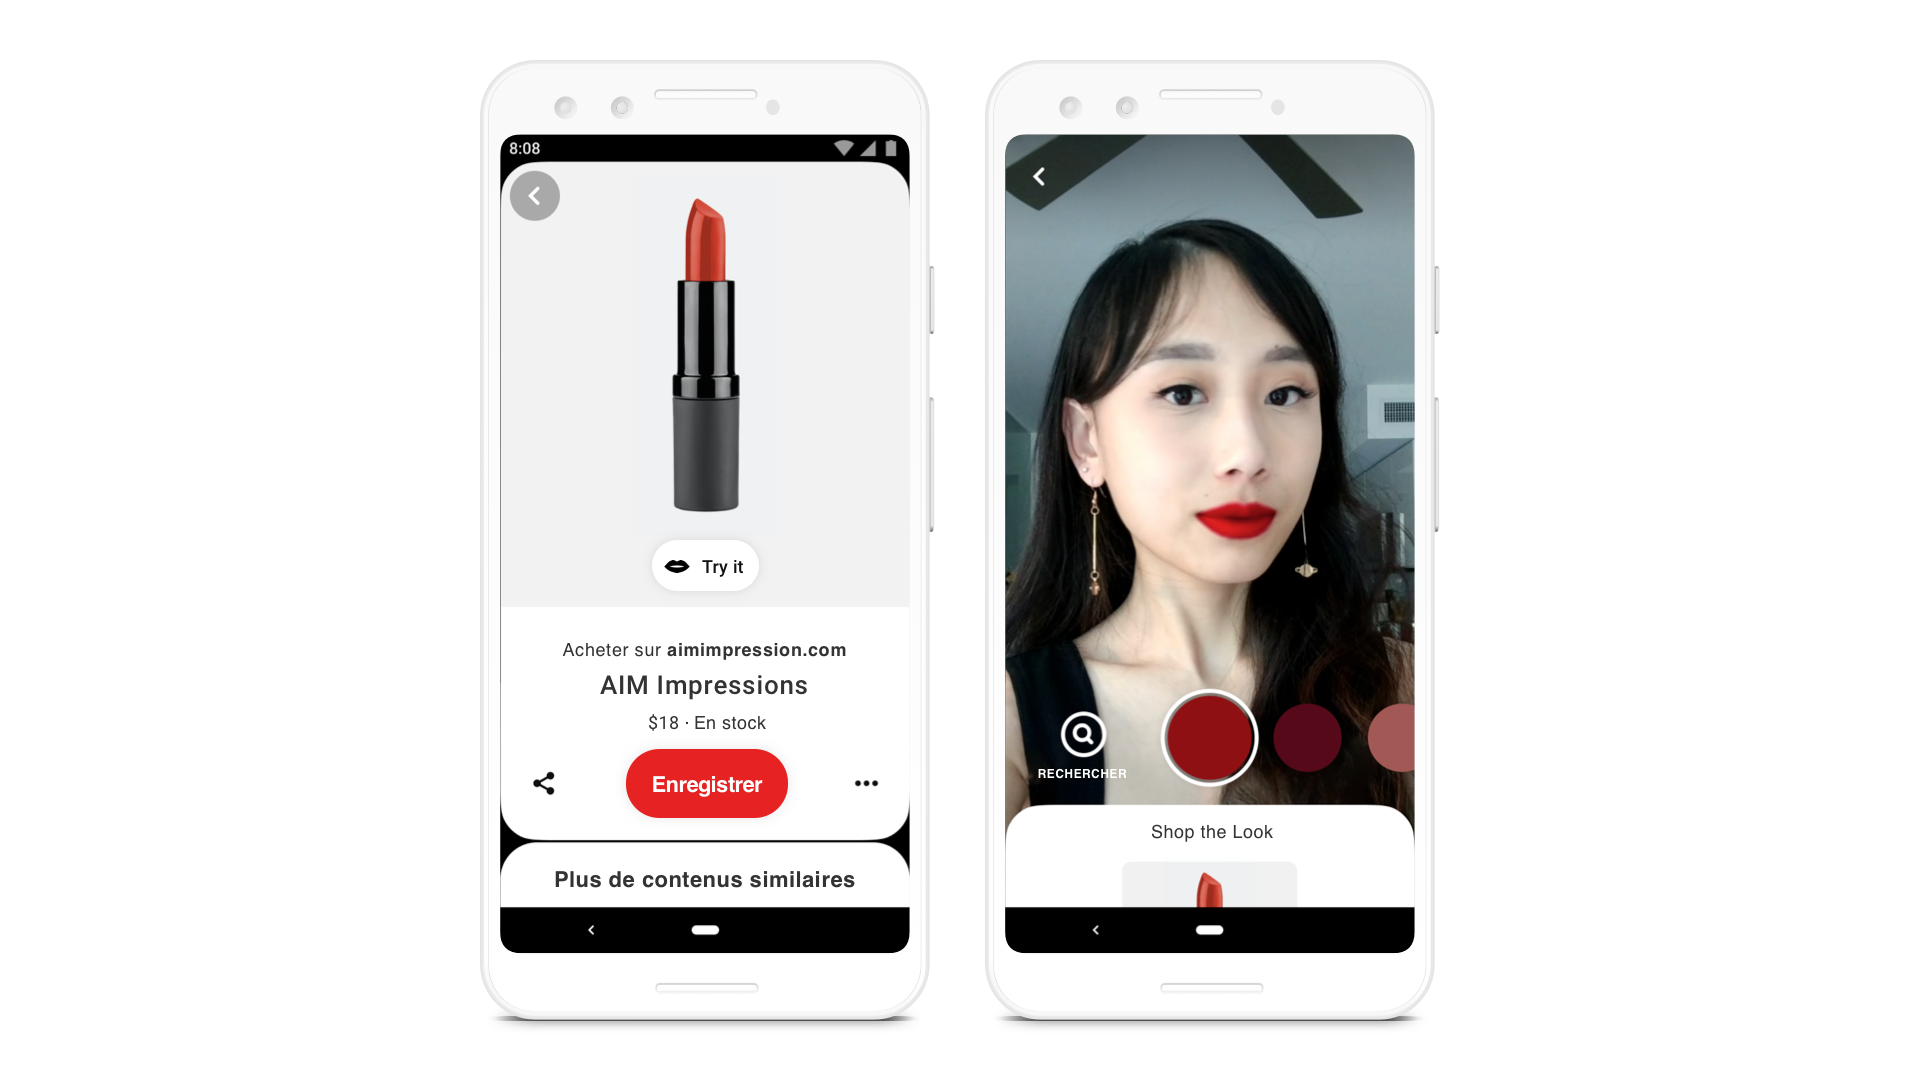 Utilisez la fonctionnalité Essai virtuel pour acheter un rouge à lèvres (à gauche), essayez une couleur de rouge à lèvres (au milieu) et recherchez des Épingles présentant un produit similaire (à droite)